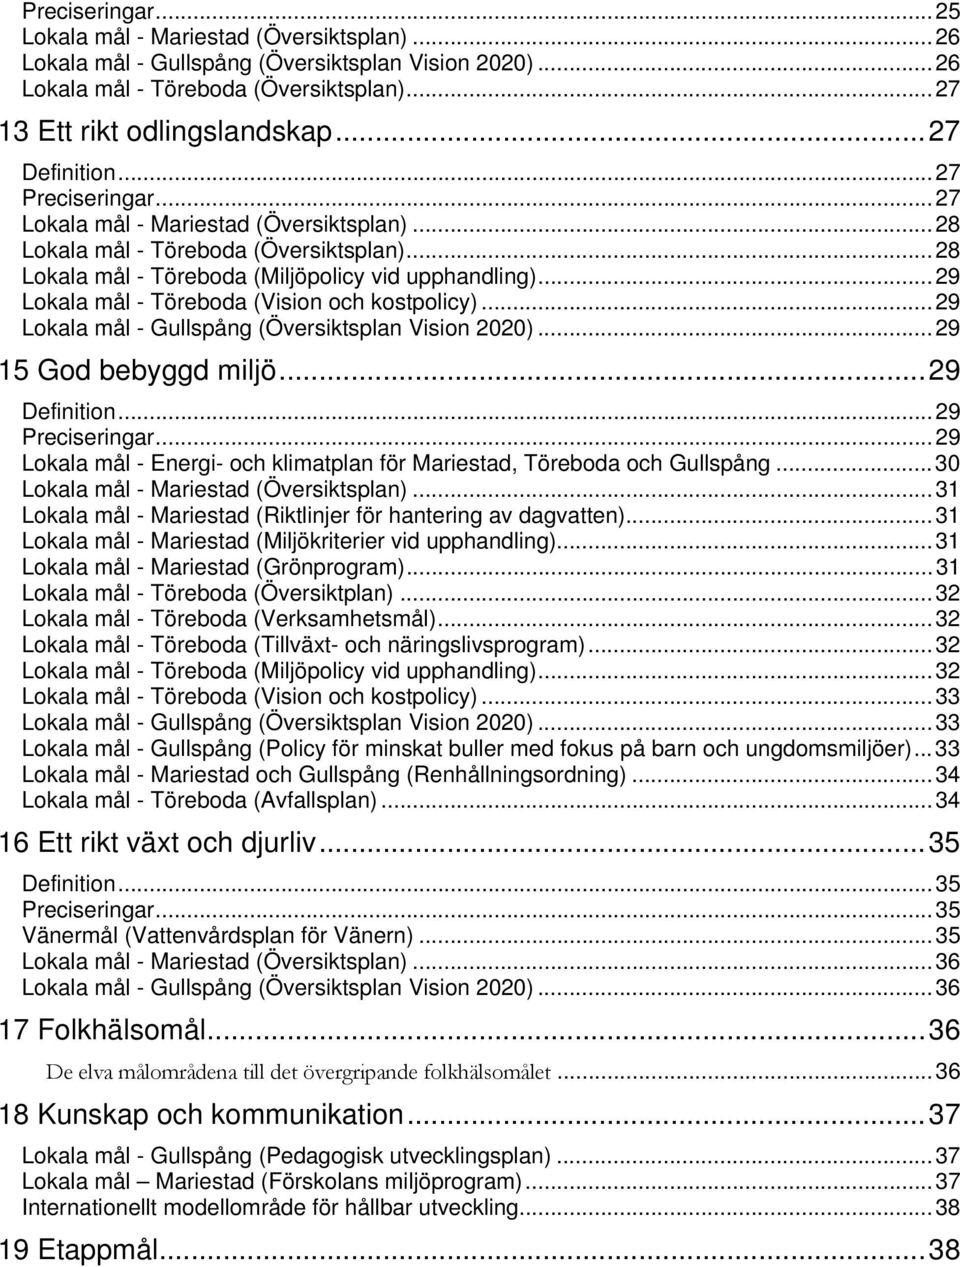 .. 29 Lokala mål - Töreboda (Vision och kostpolicy)... 29 Lokala mål - Gullspång (Översiktsplan Vision 2020)... 29 15 God bebyggd miljö... 29 Definition... 29 Preciseringar.